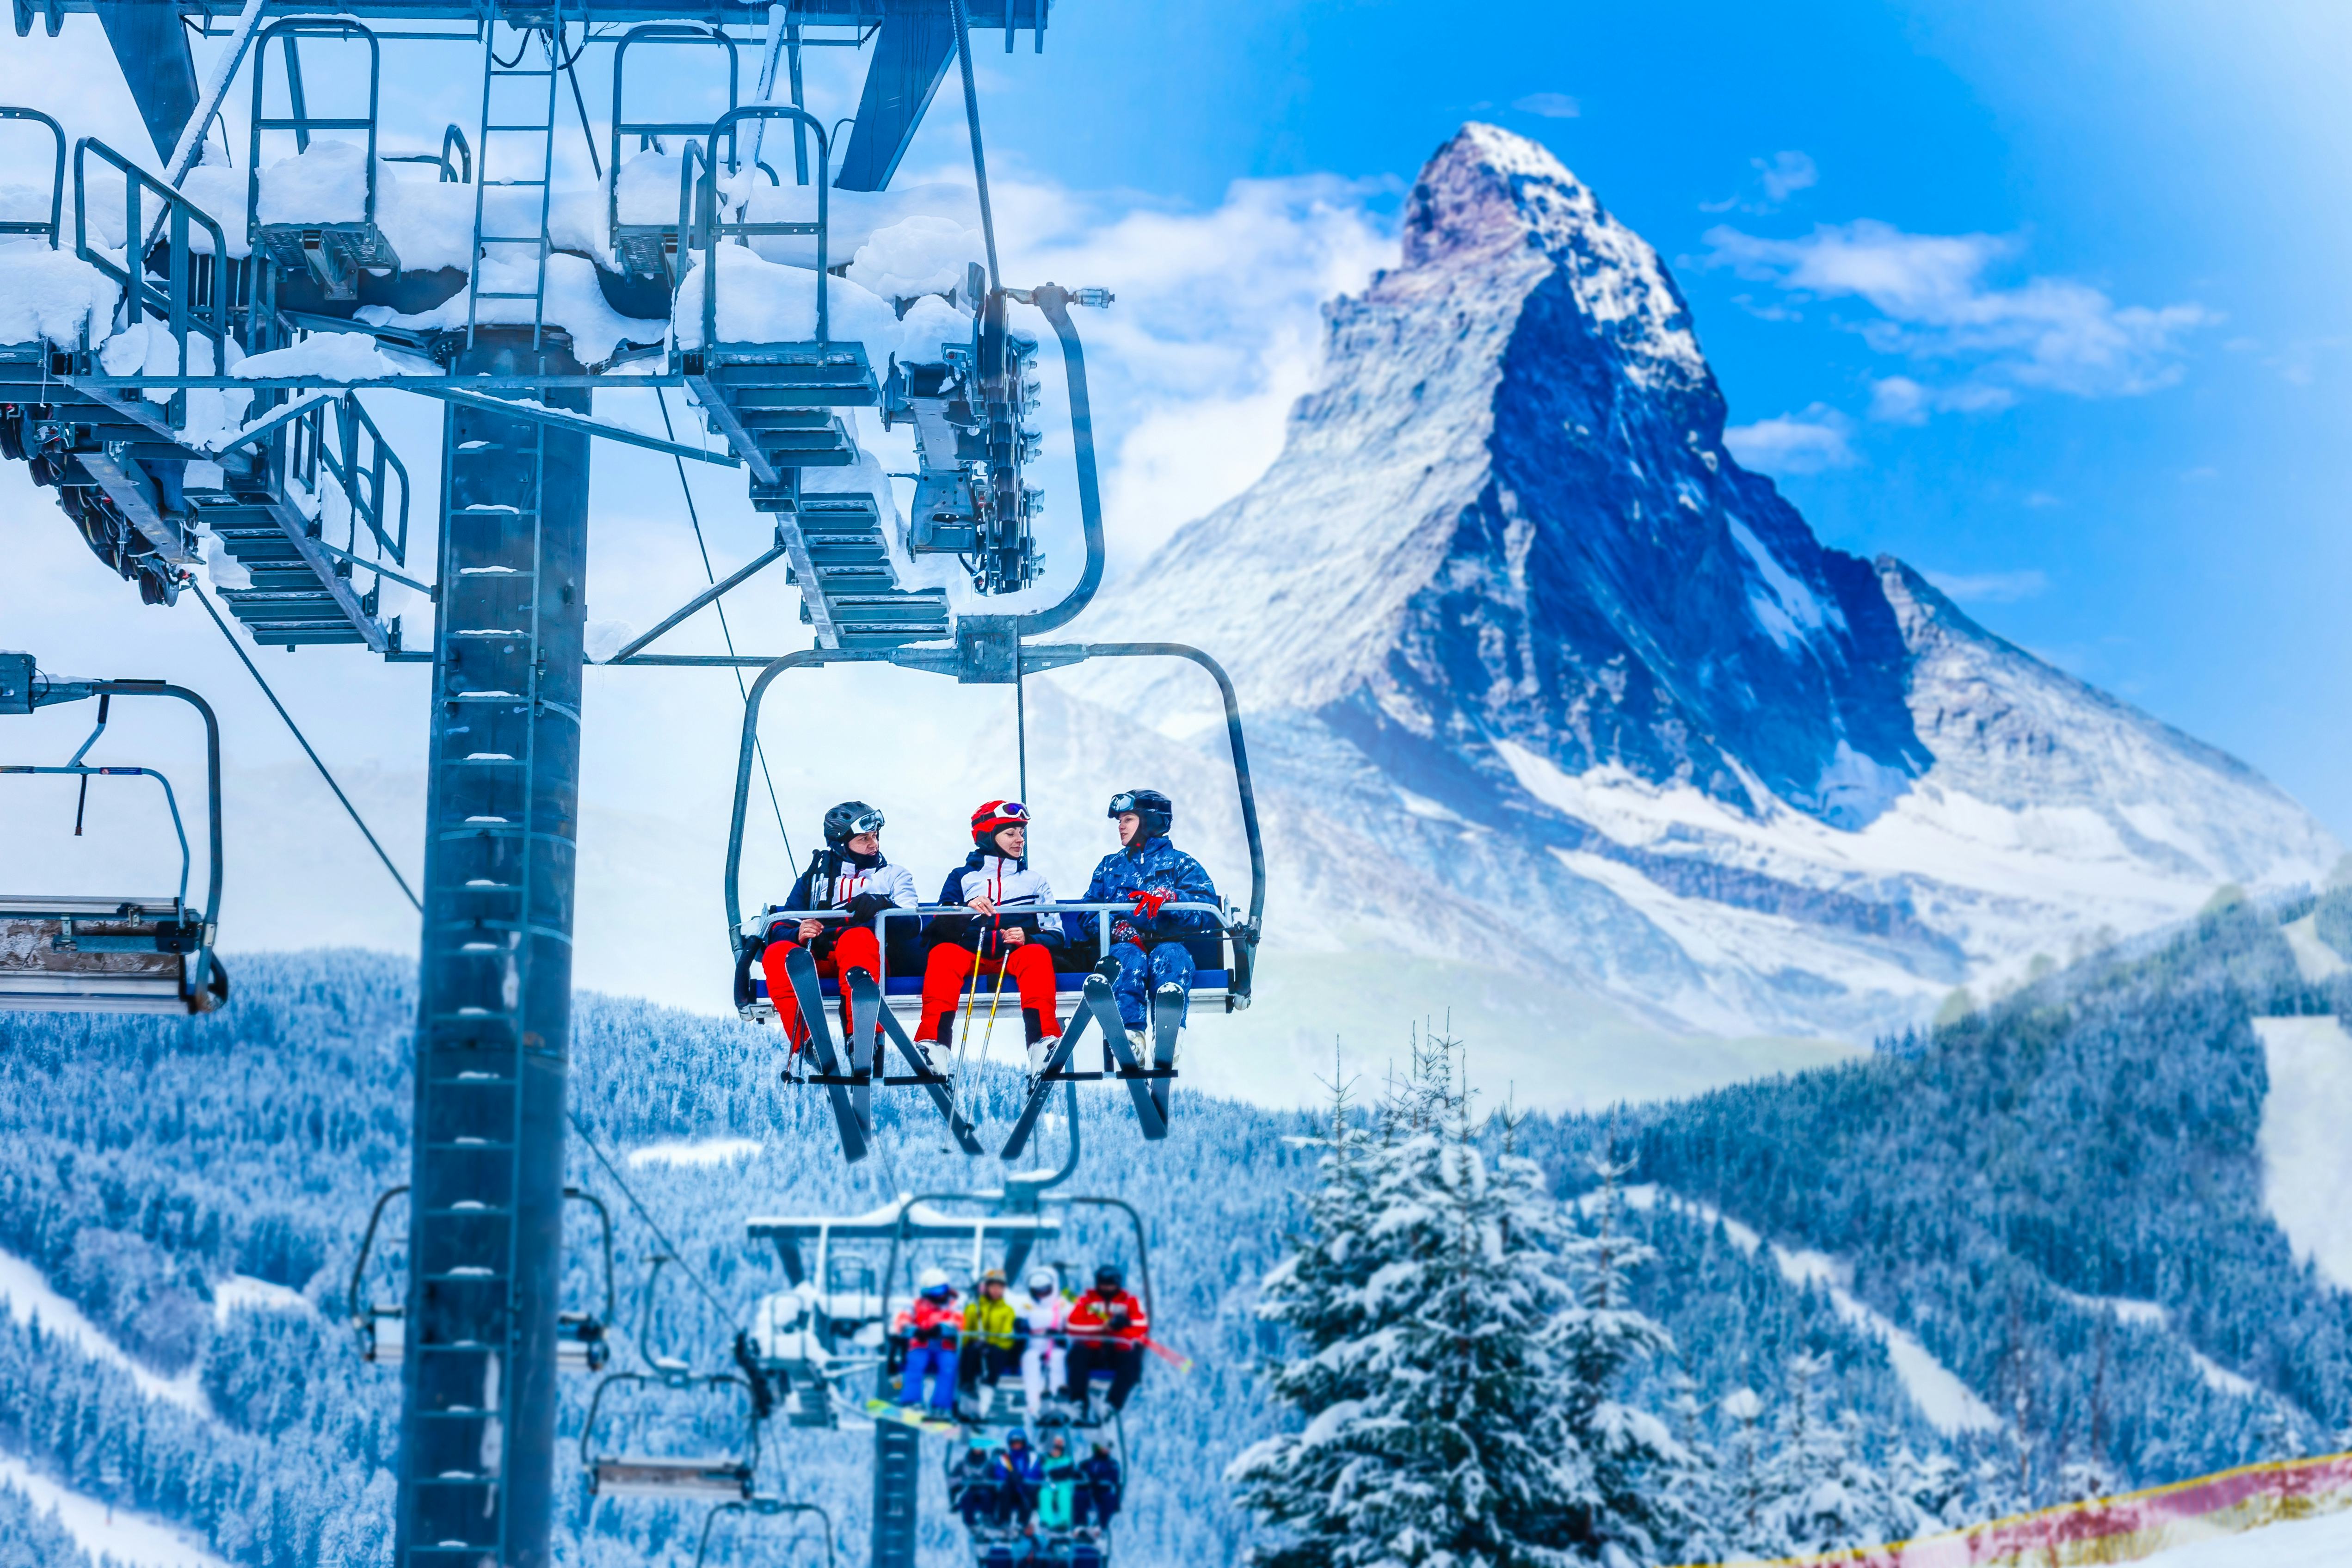 Gornergrat, Zermatt, Matterhorn ski resort in Switzerland with cable chairlift
